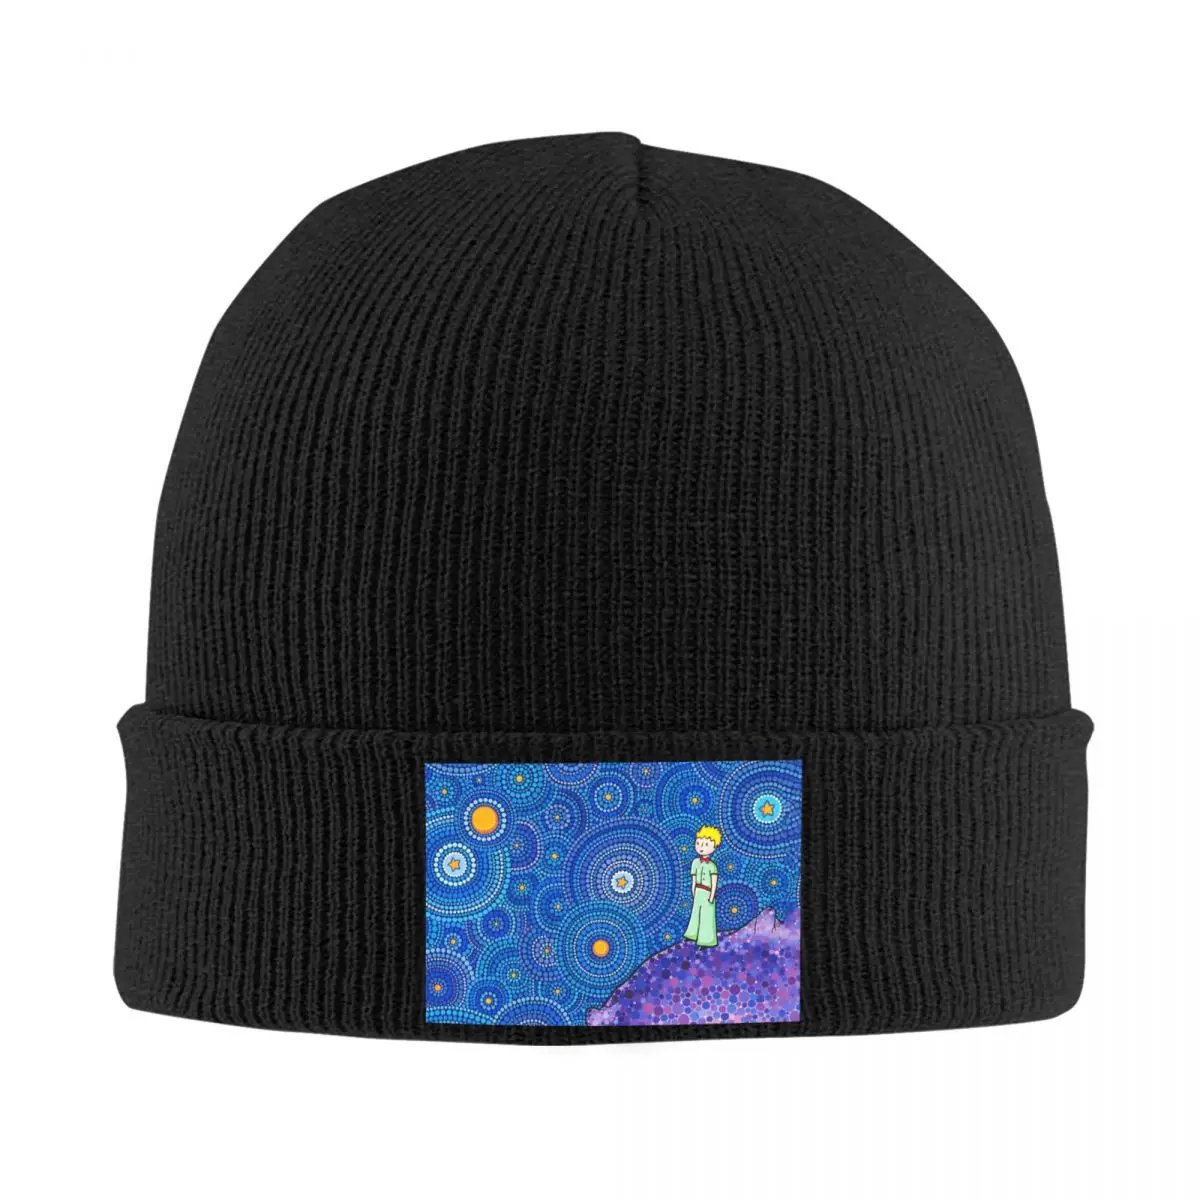 

The Little Prince Skullies Beanies Caps Unisex Winter Warm Knit Hat Le Petit Prince French Fiction Bonnet Hats Outdoor Ski Cap